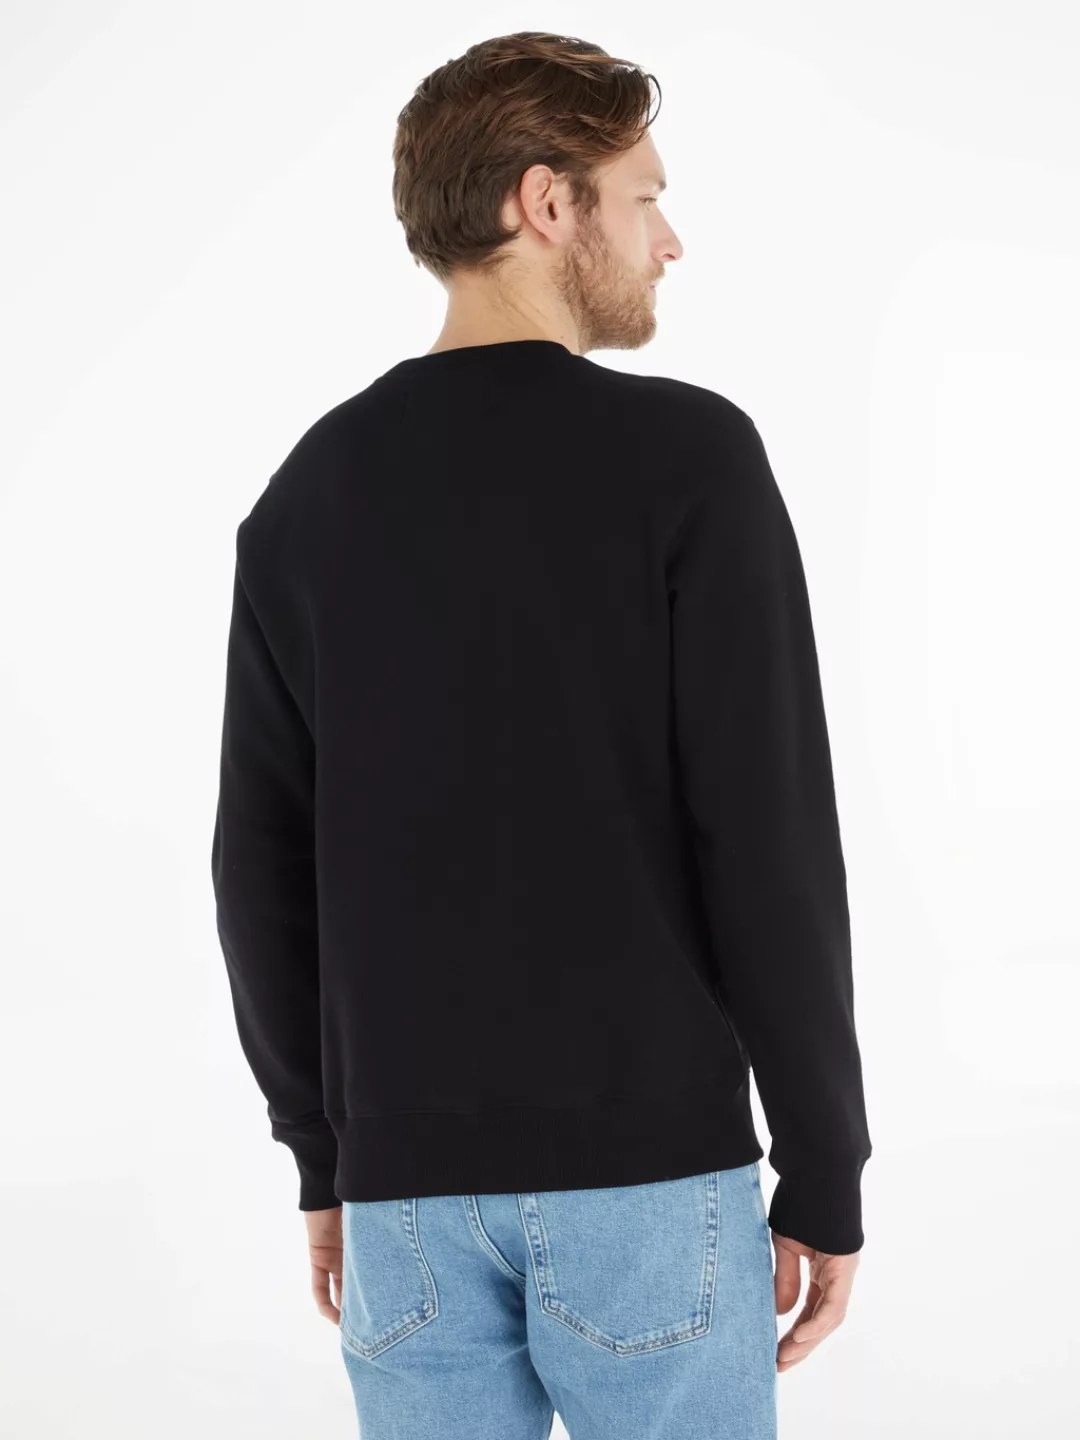 Calvin Klein Jeans Sweatshirt "ICONIC MONOGRAM CREWNECK" günstig online kaufen